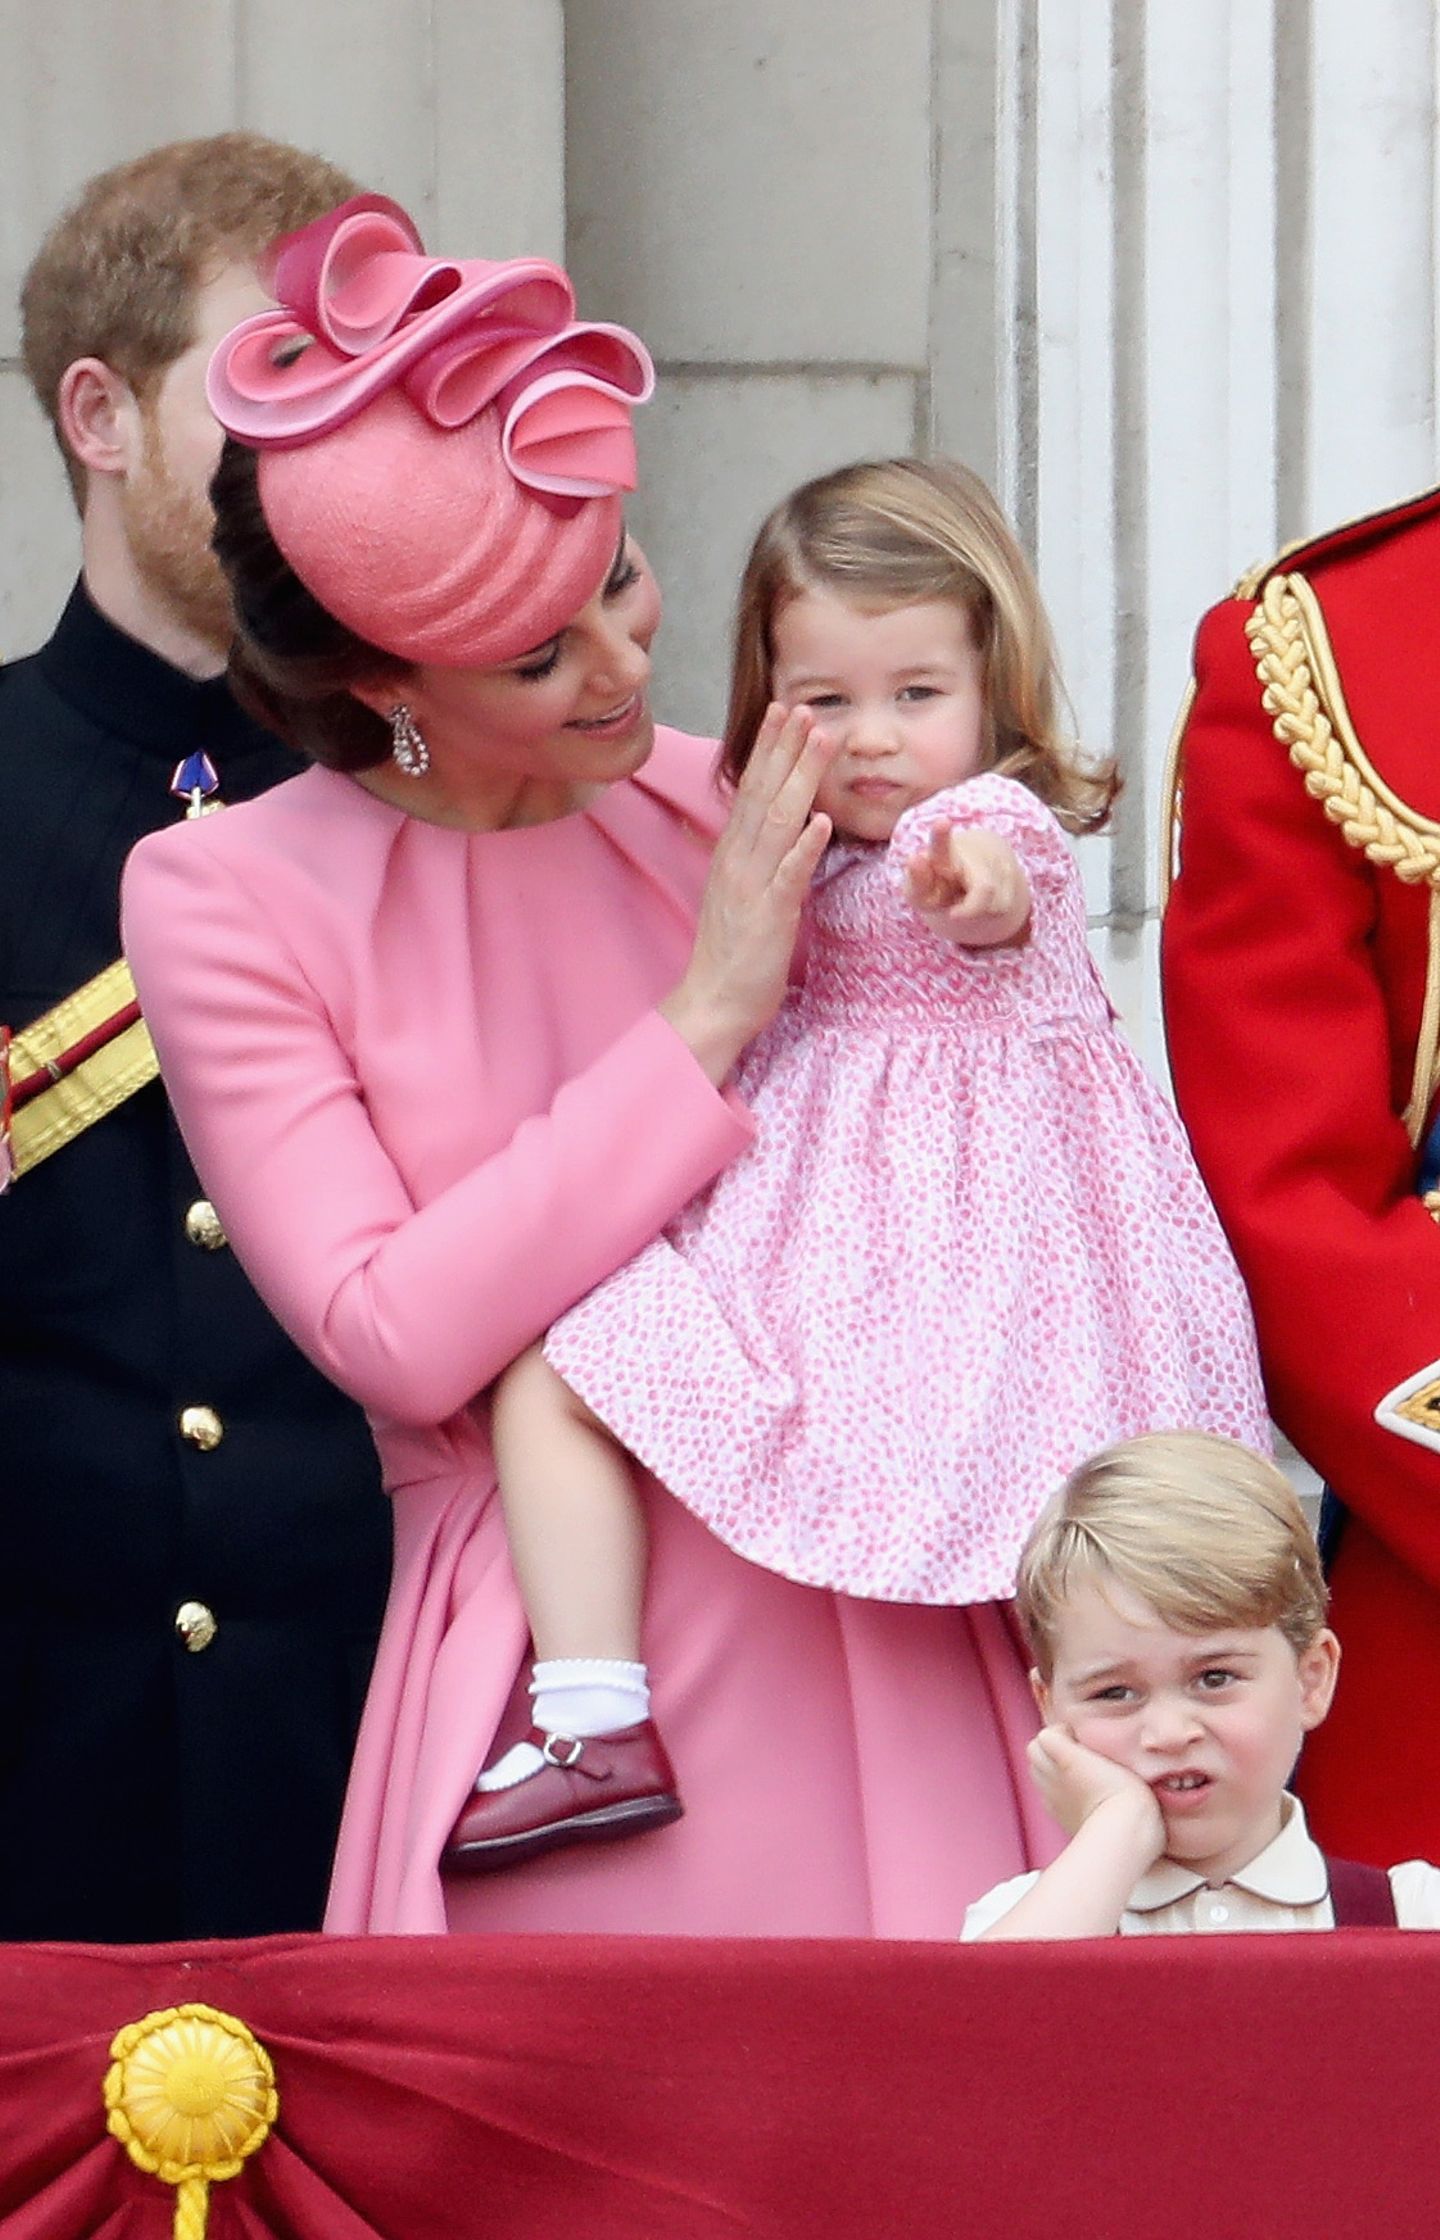 Queen-Geburtstag: So süß stehlen George & Charlotte allen die Show 💞